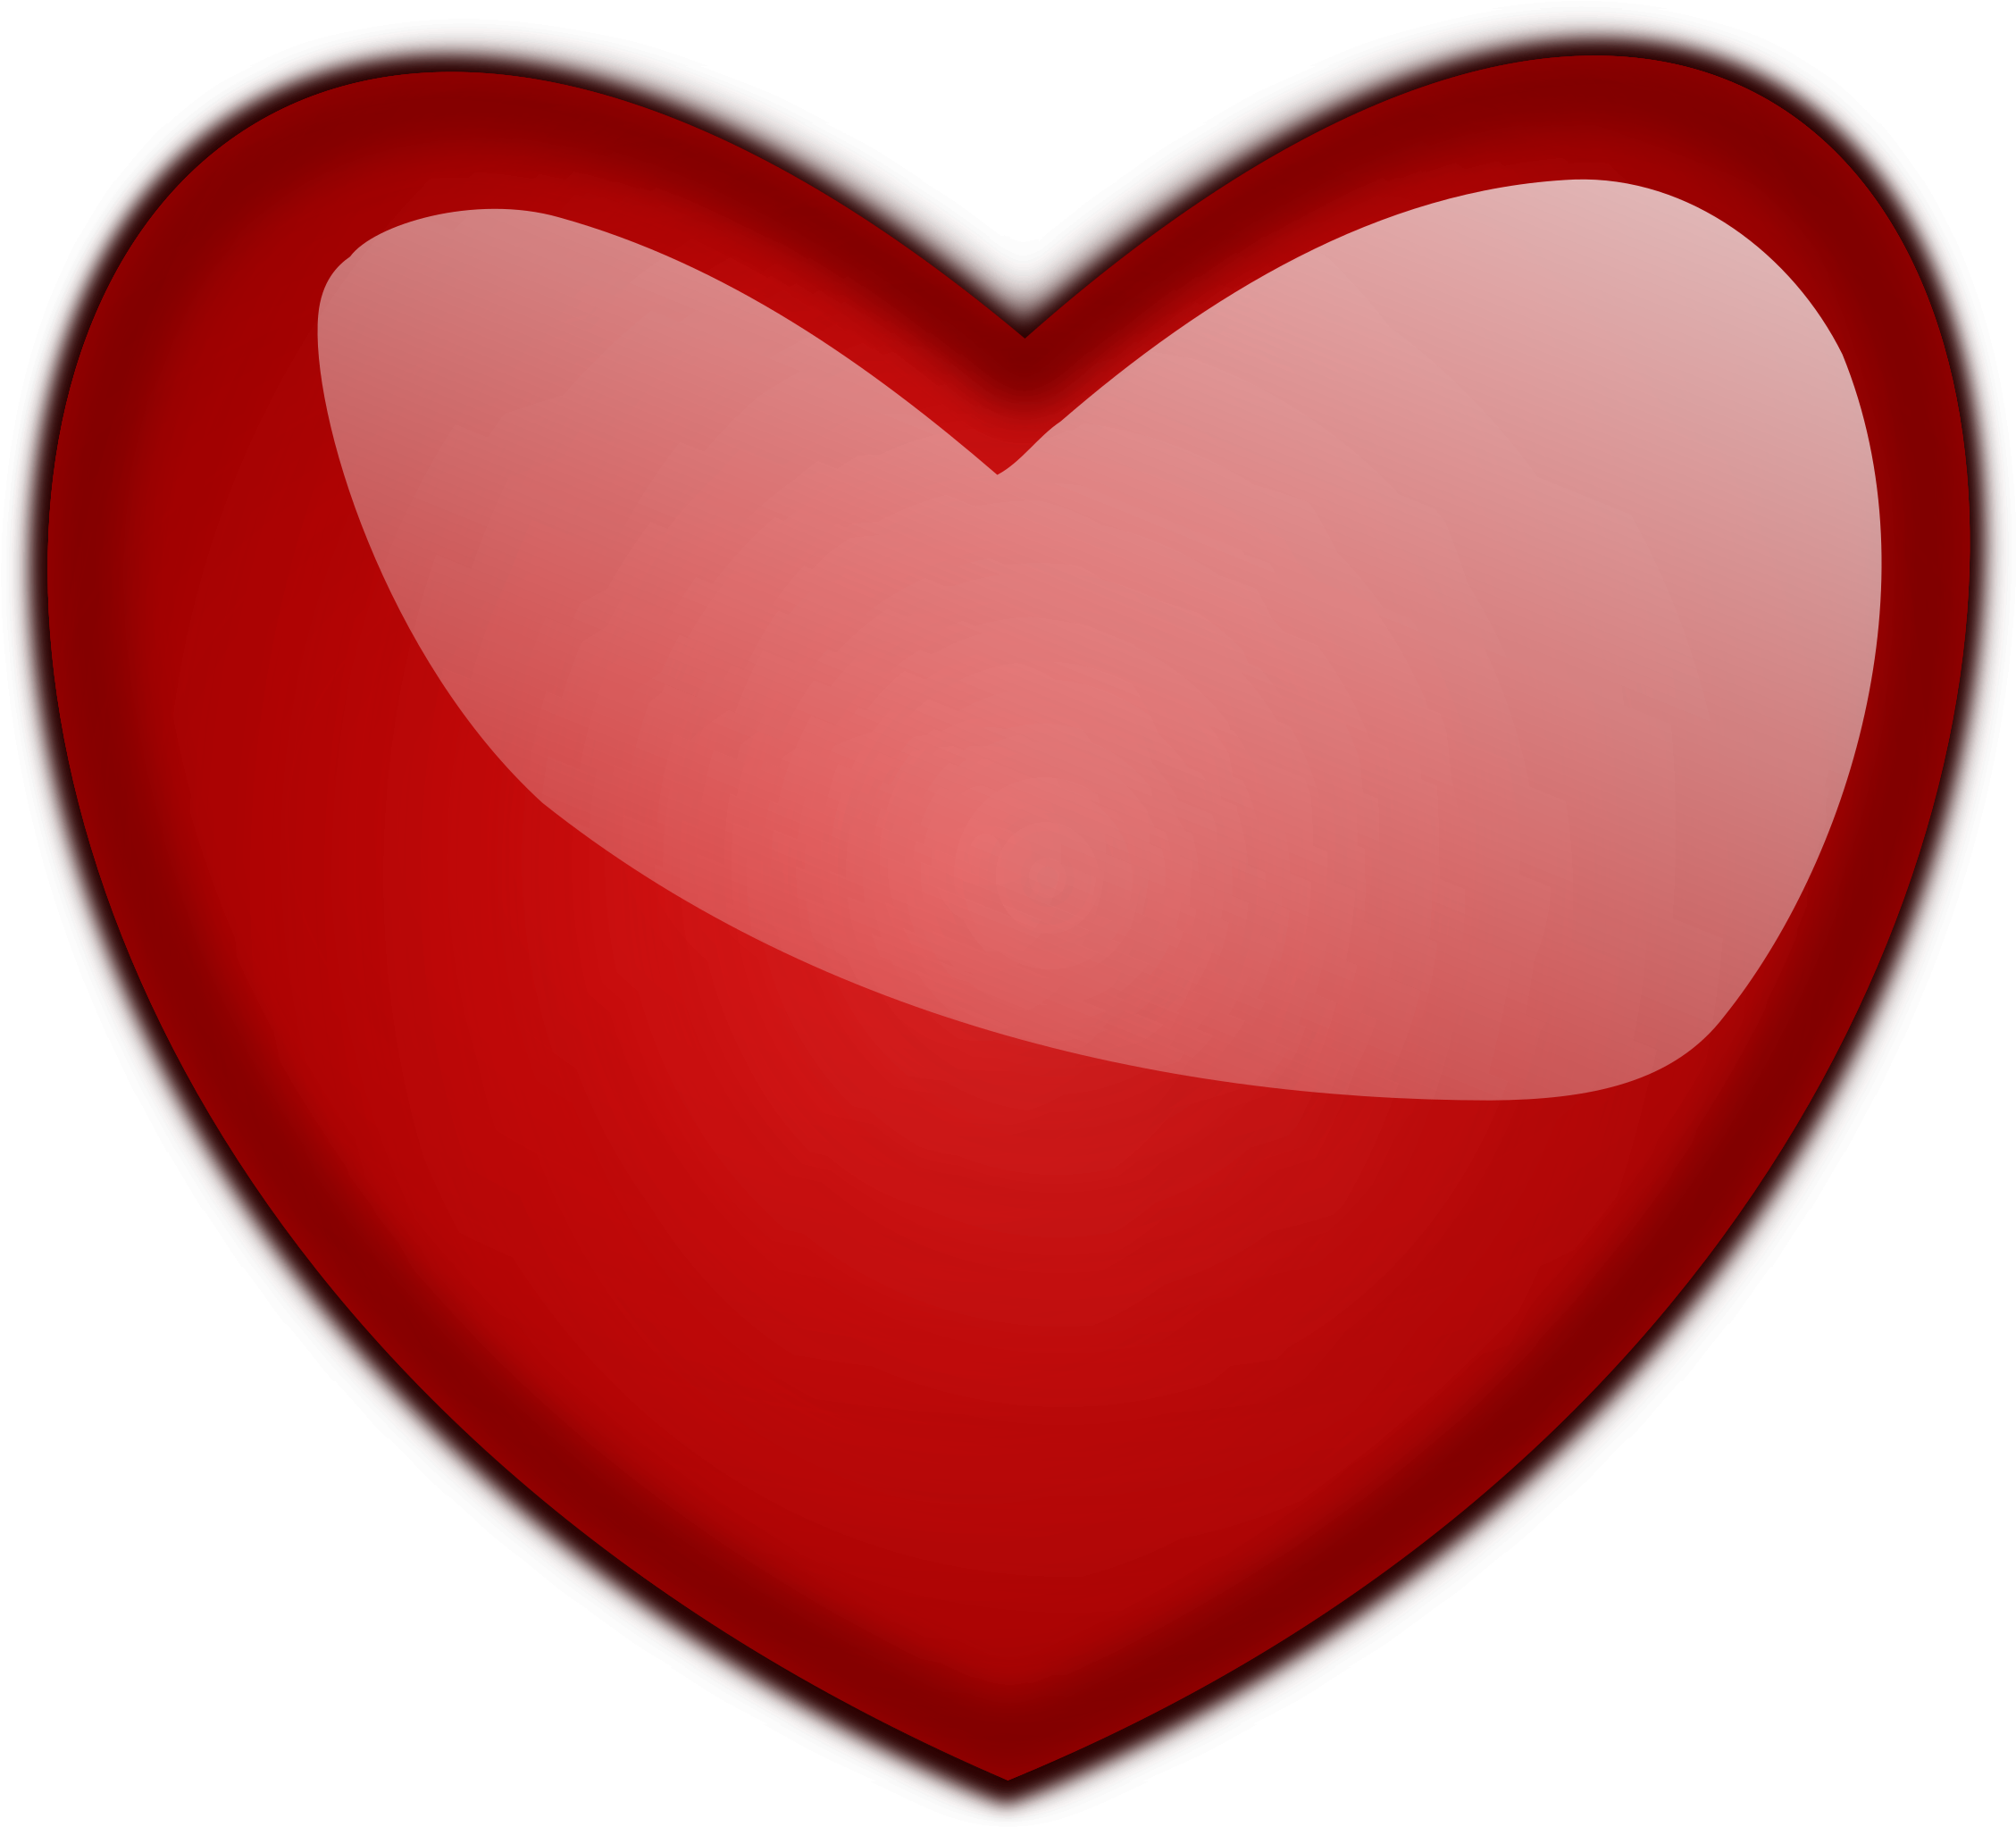 Heart 1 - Glossy Heart (2400x2400)